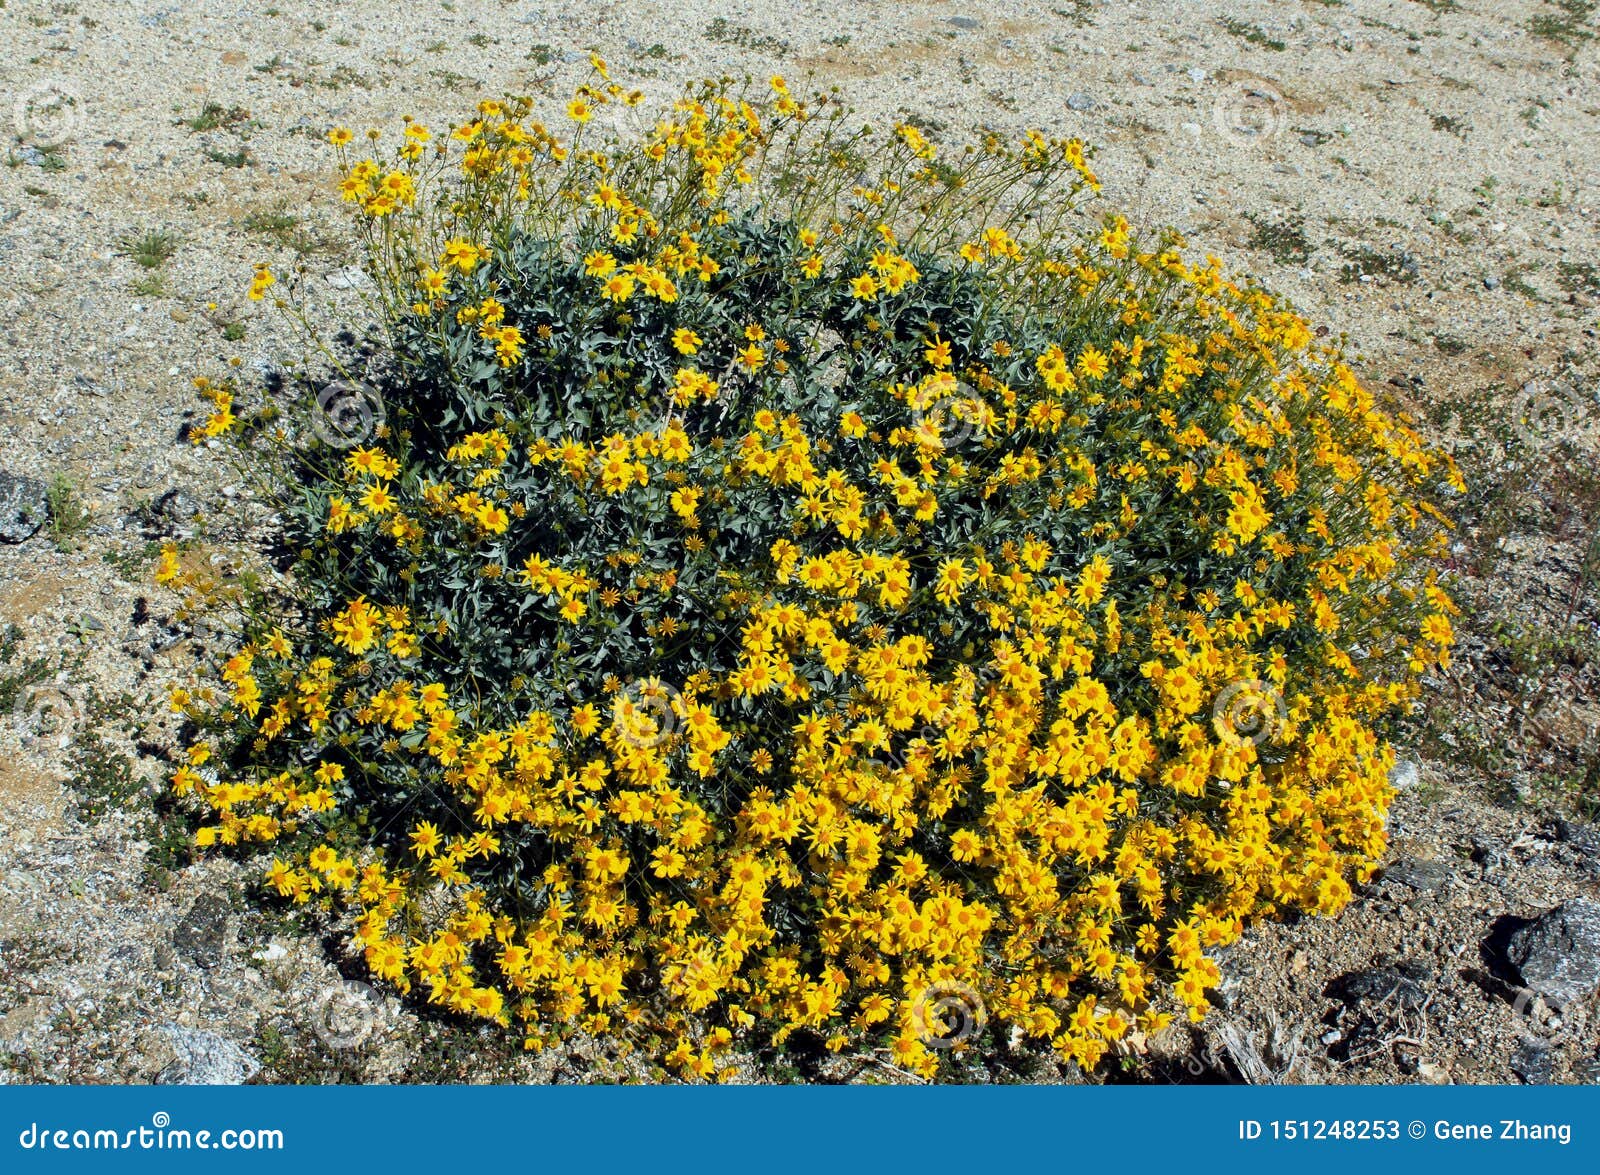 anza borrego desert state park, yellow brittlebush flowers